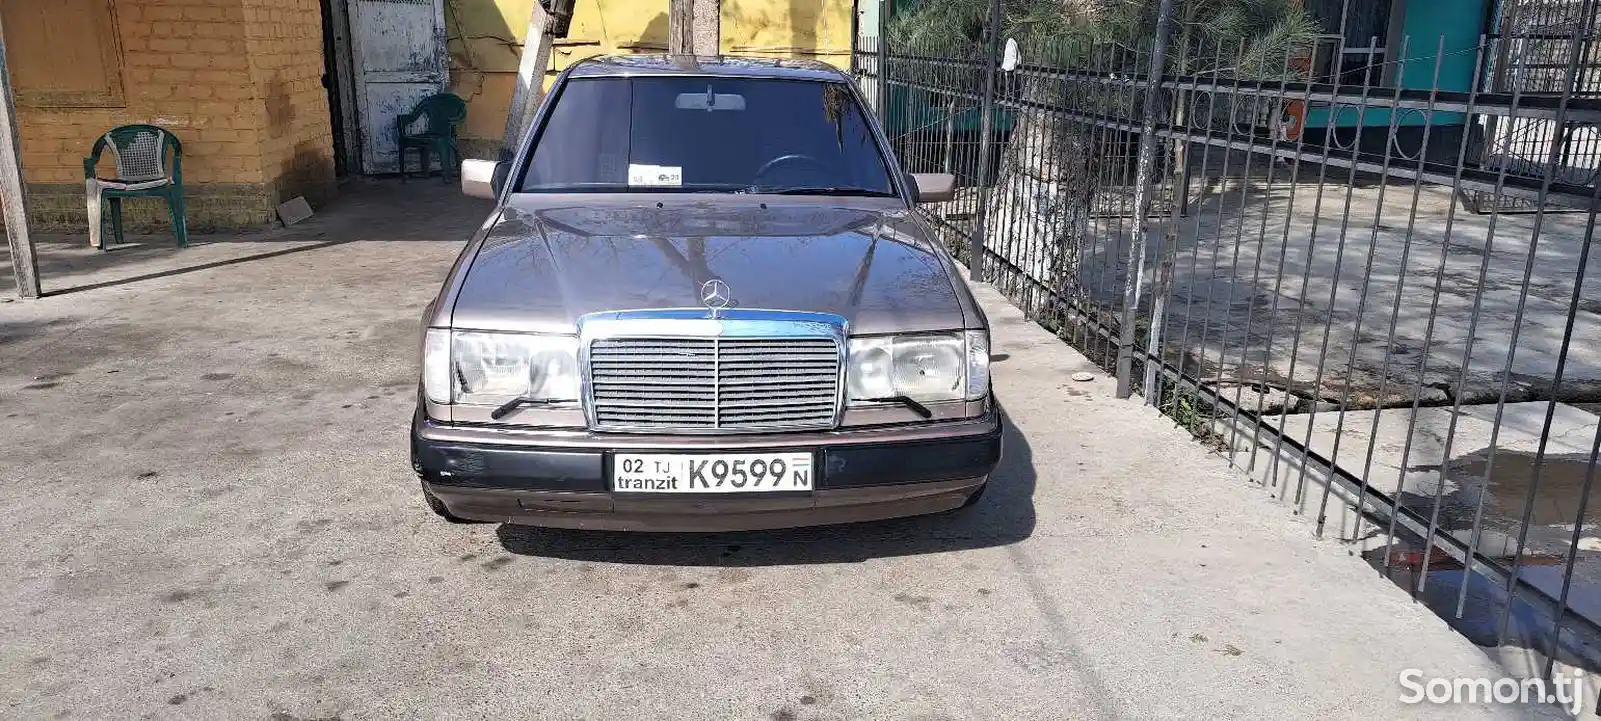 Mercedes-Benz E class, 1992-1